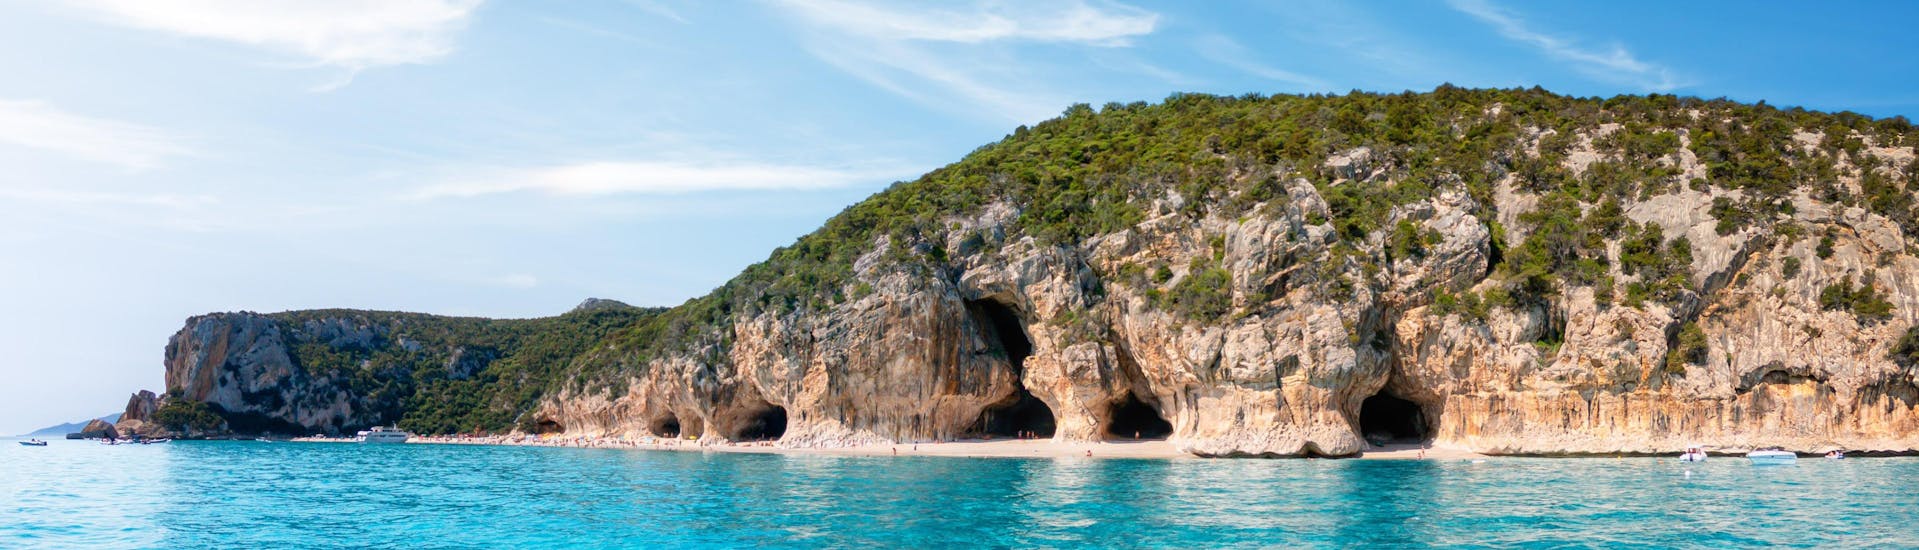 Photo des grottes situées le long de la côte de Cala Luna, en Sardaigne, une destination populaire pour les excursions en bateau.